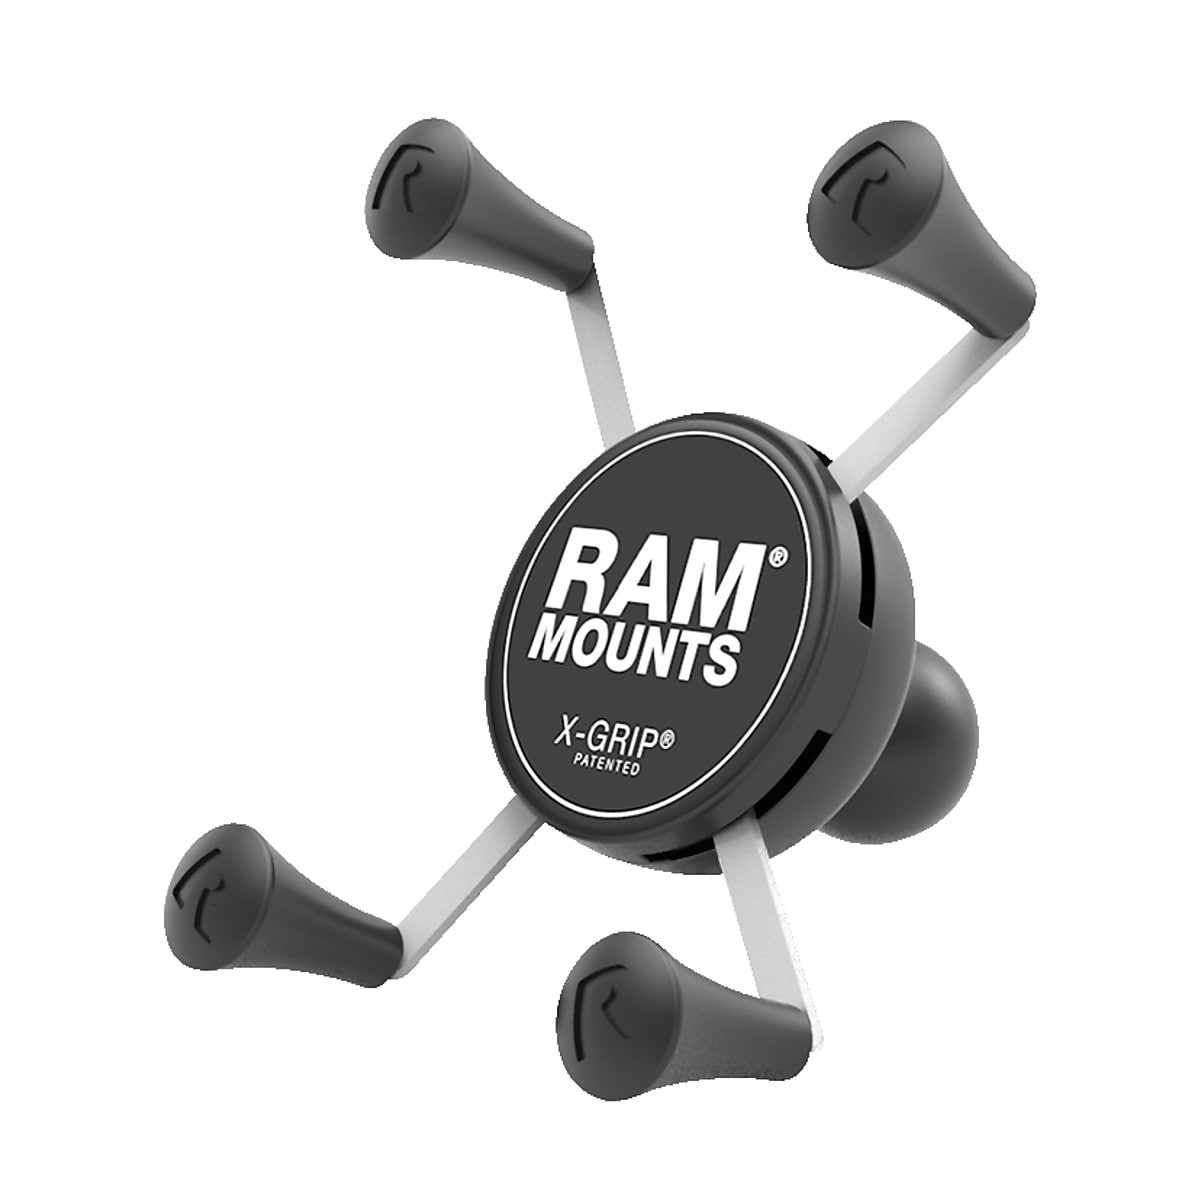 Hållare för Smartphone Ram Mounts X-grip